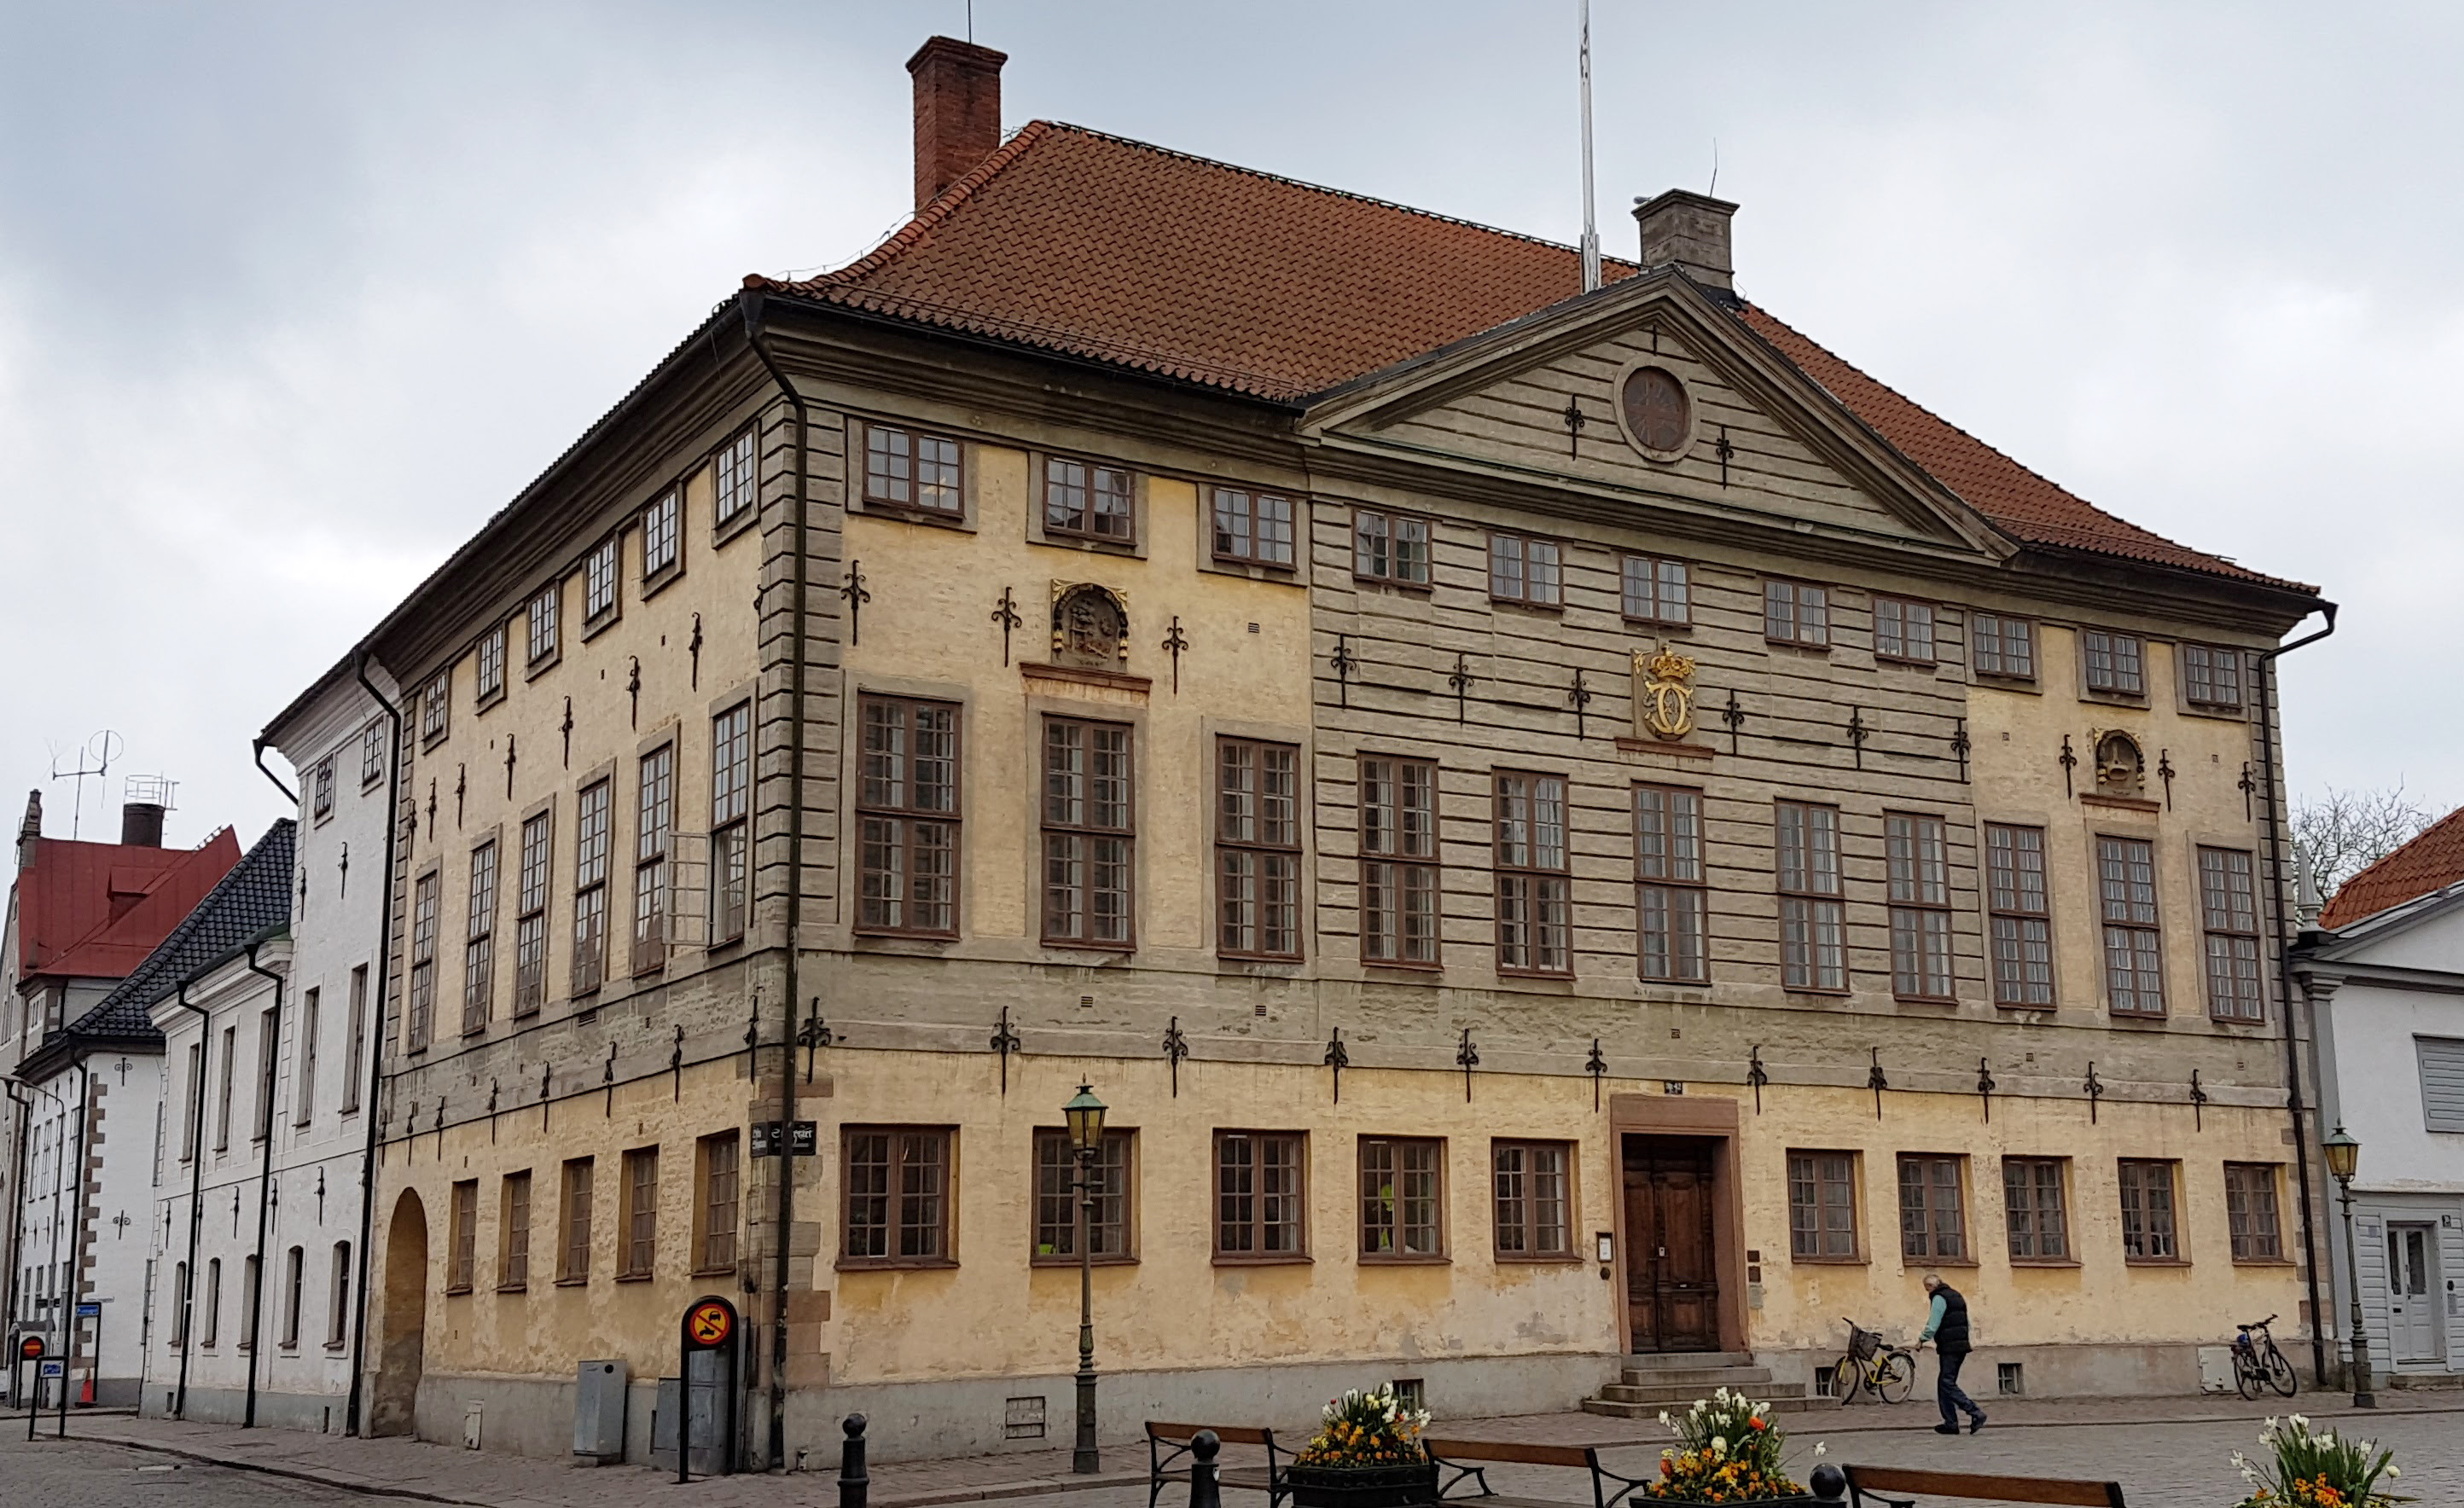 Är rådhuset i Kalmar Sveriges vackraste byggnad genom tiderna?